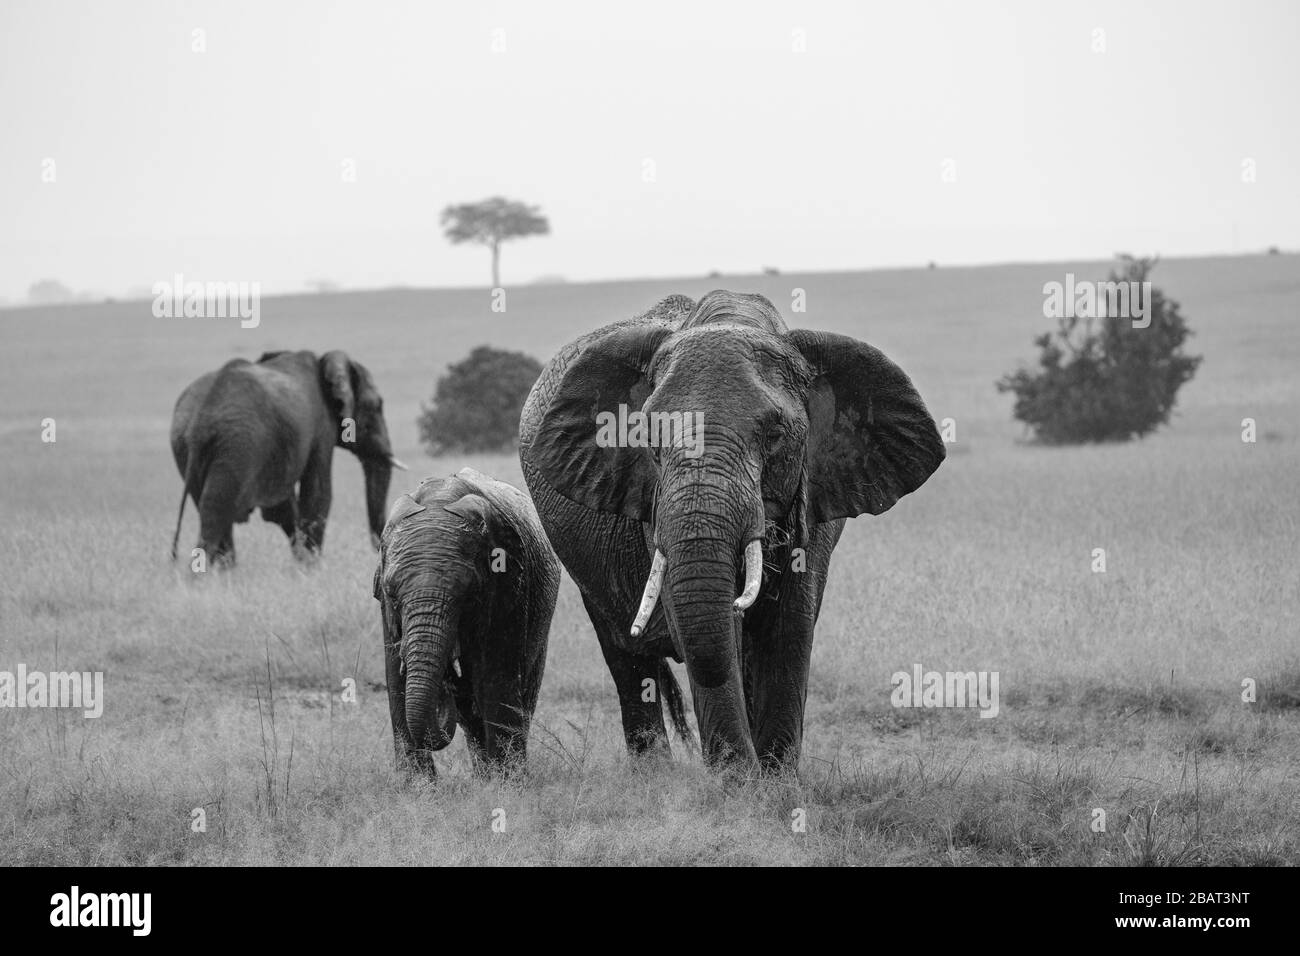 Una madre e un giovane elefante che mangiano insieme nell'erba con altri elefanti sullo sfondo, Masai Mara, Kenya, in bianco e nero Foto Stock